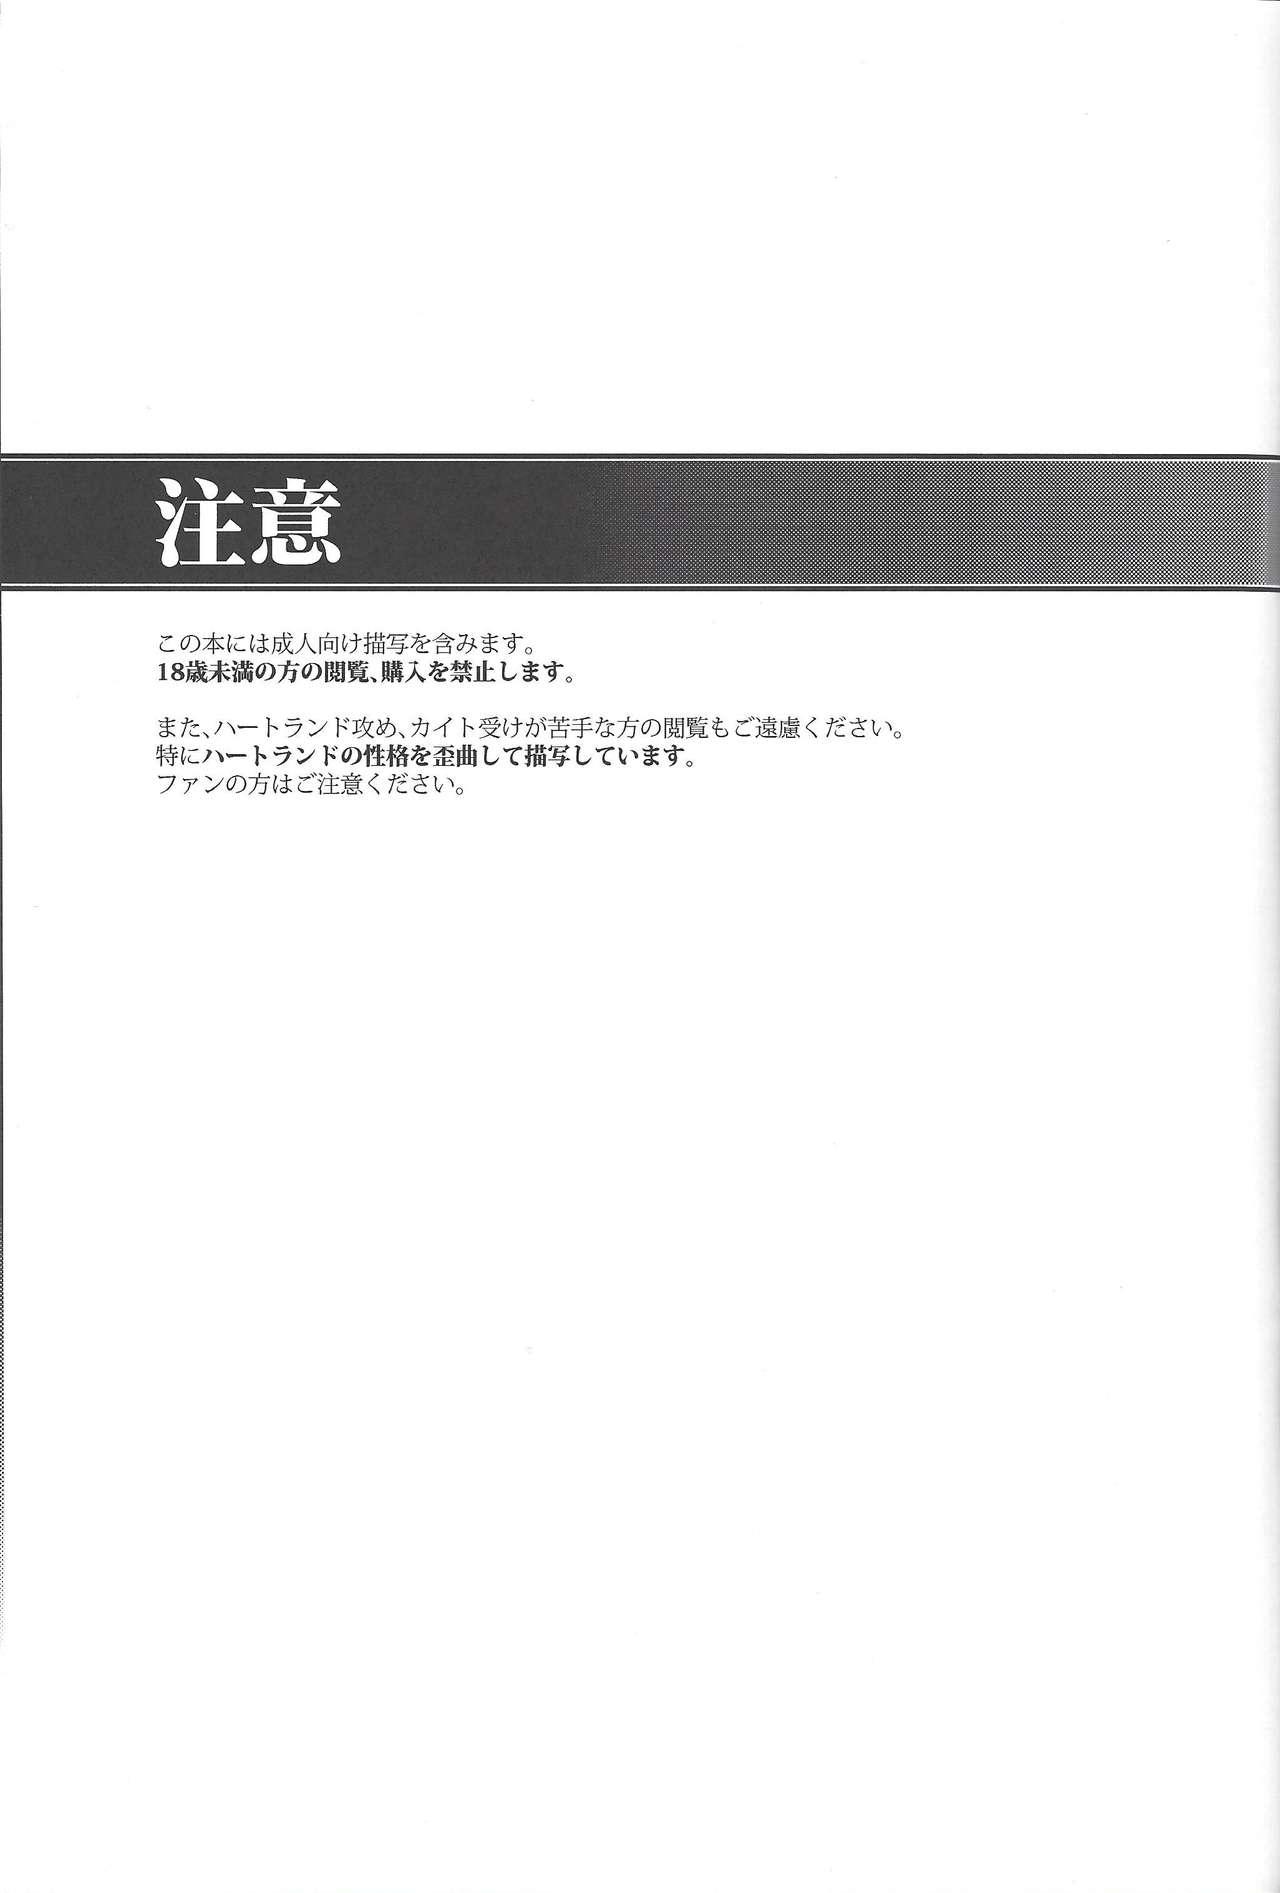 Teensex Hito no Kakera - Yu gi oh zexal Erotic - Page 2